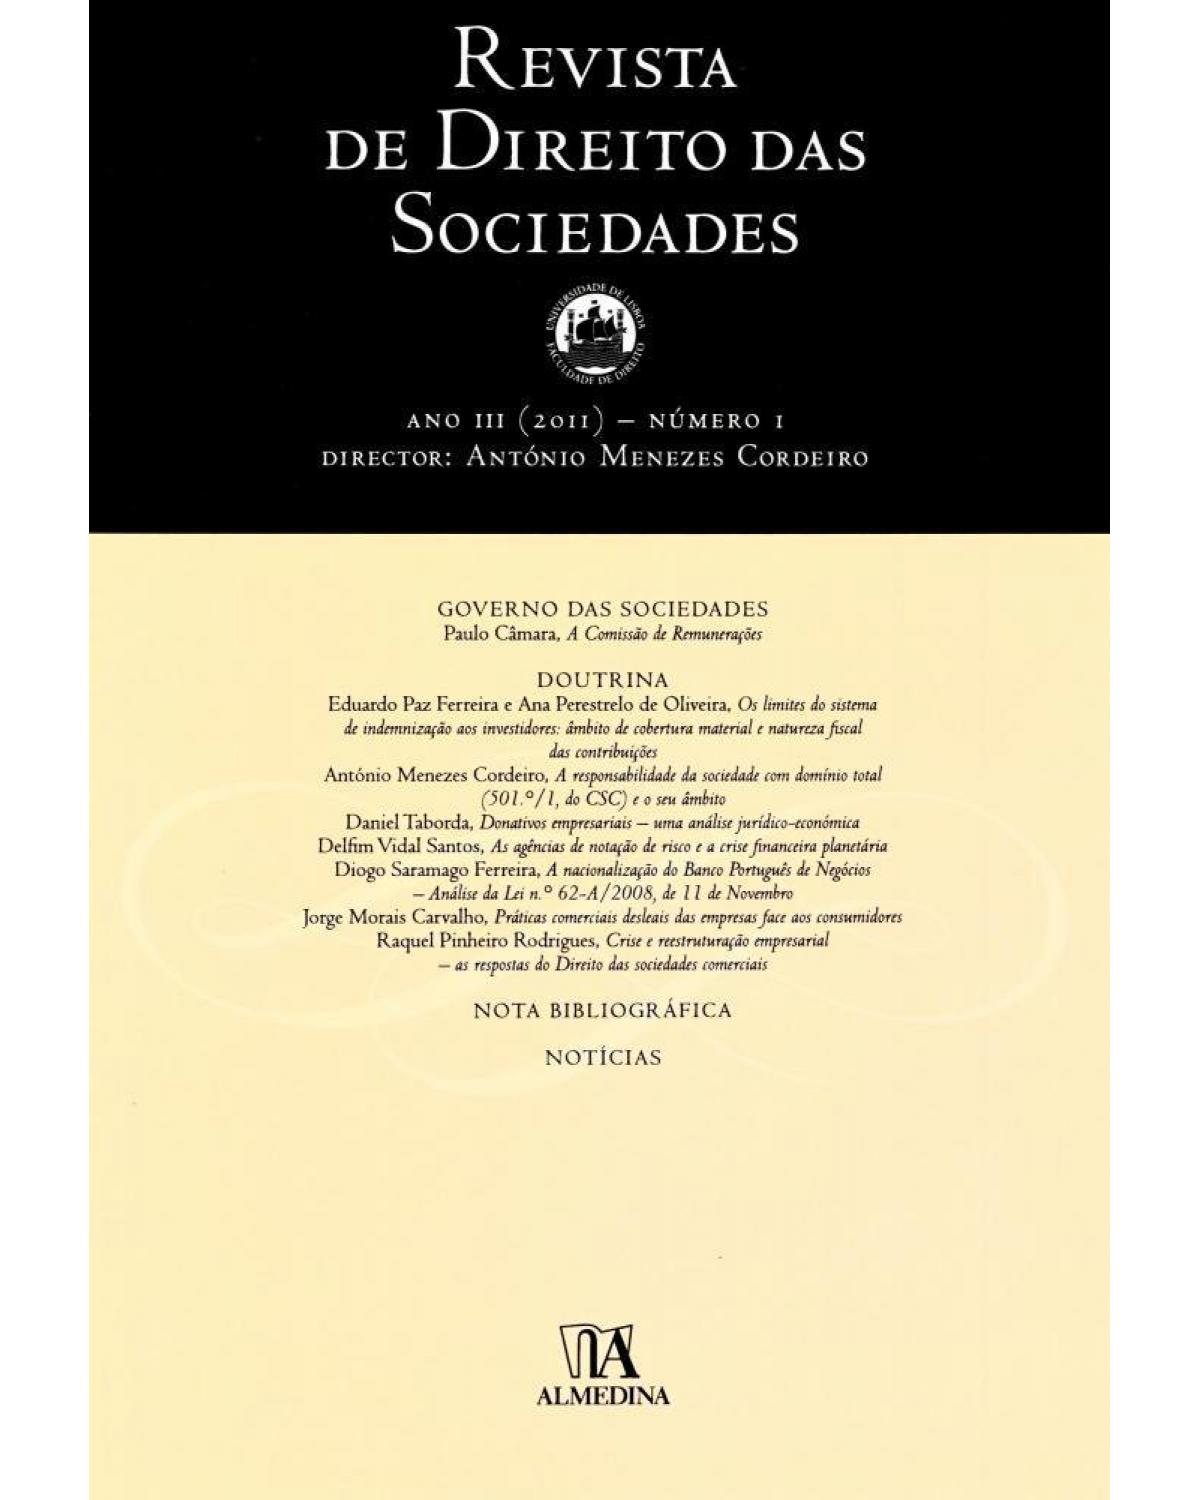 Revista de direito das sociedades - ano III - Nº 1 - 1ª Edição | 2011